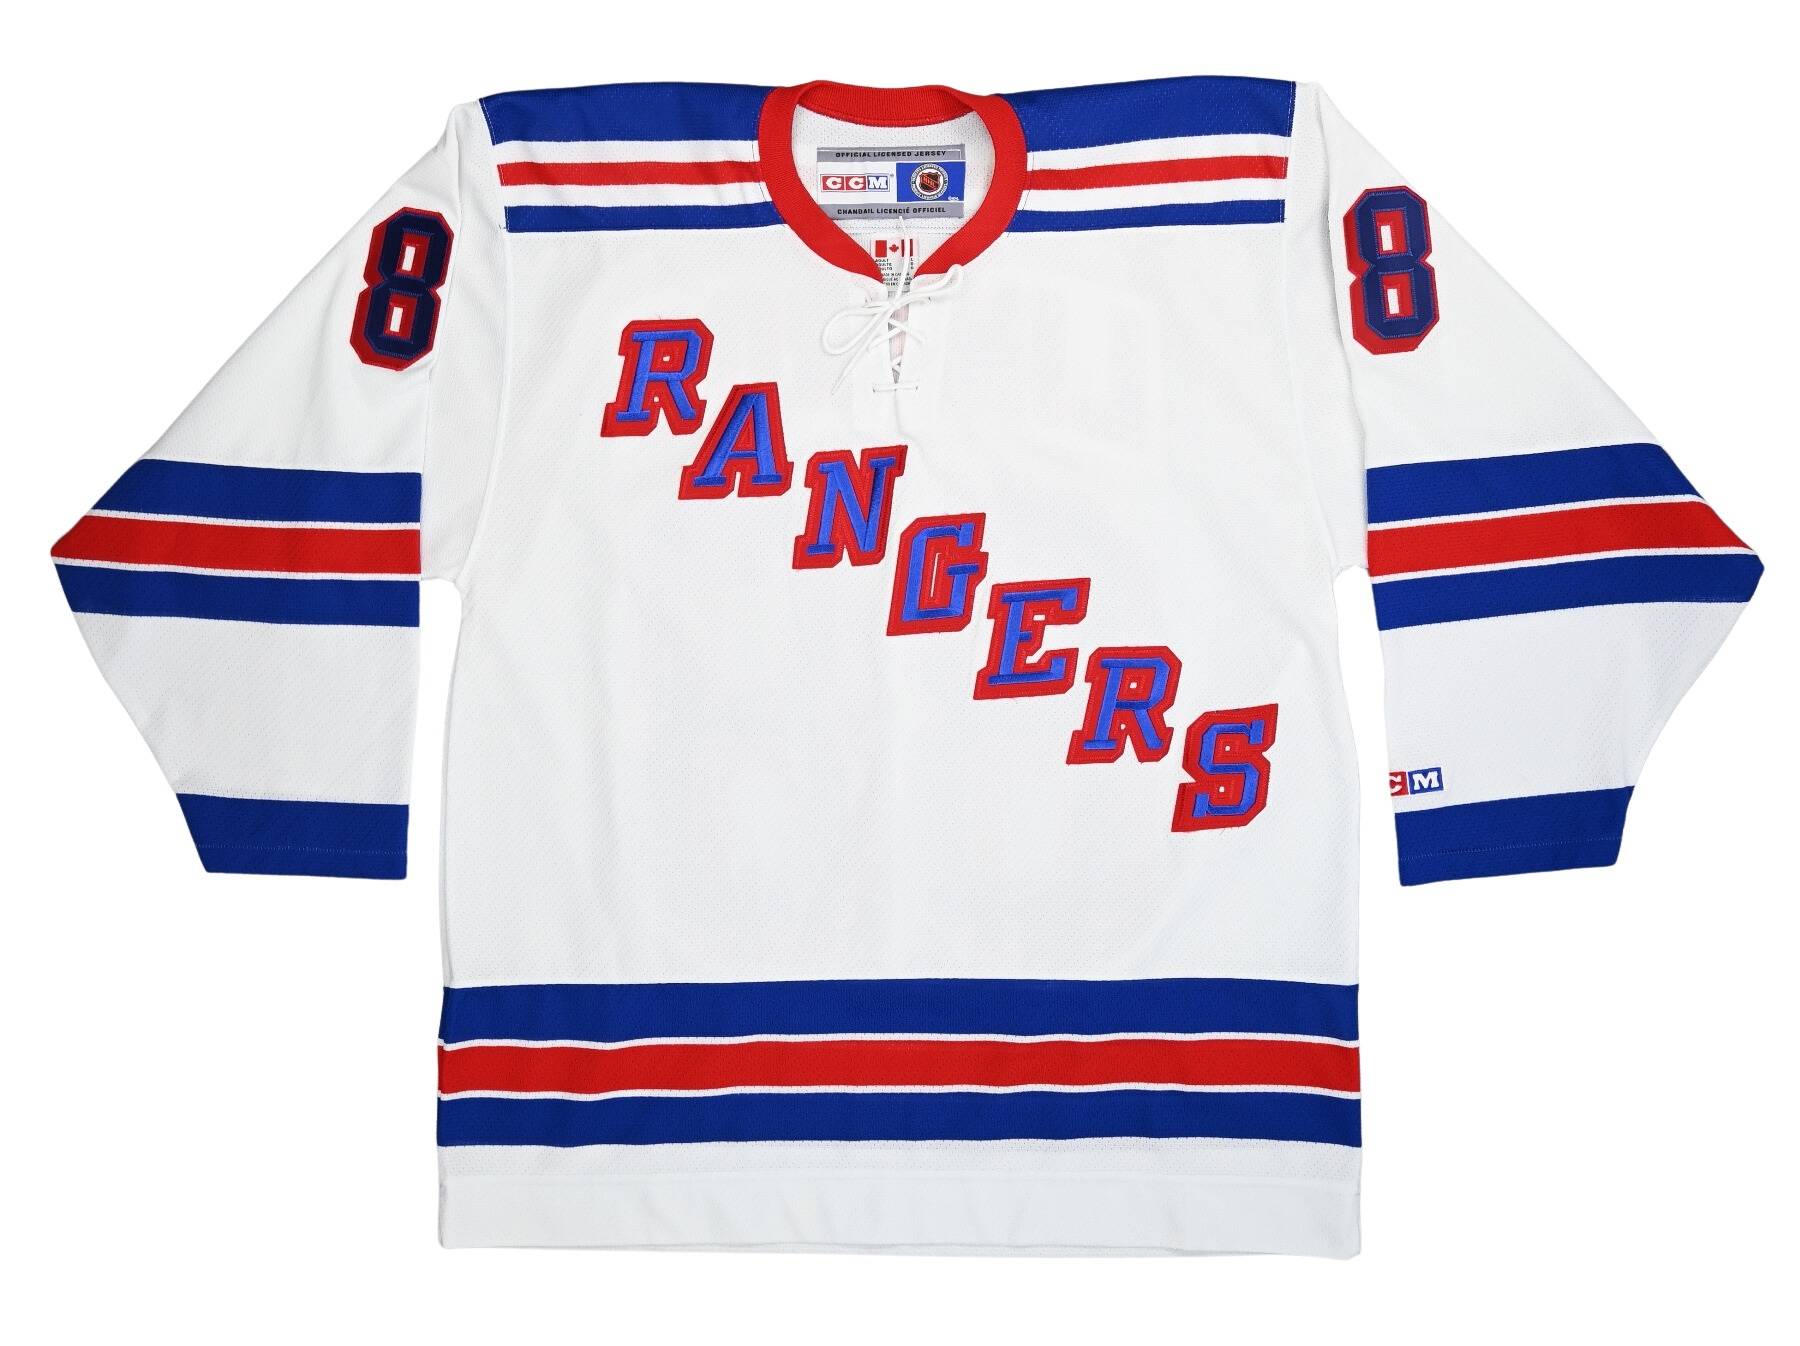 New York Rangers Playoffs Apparel, Rangers Gear, New York Rangers